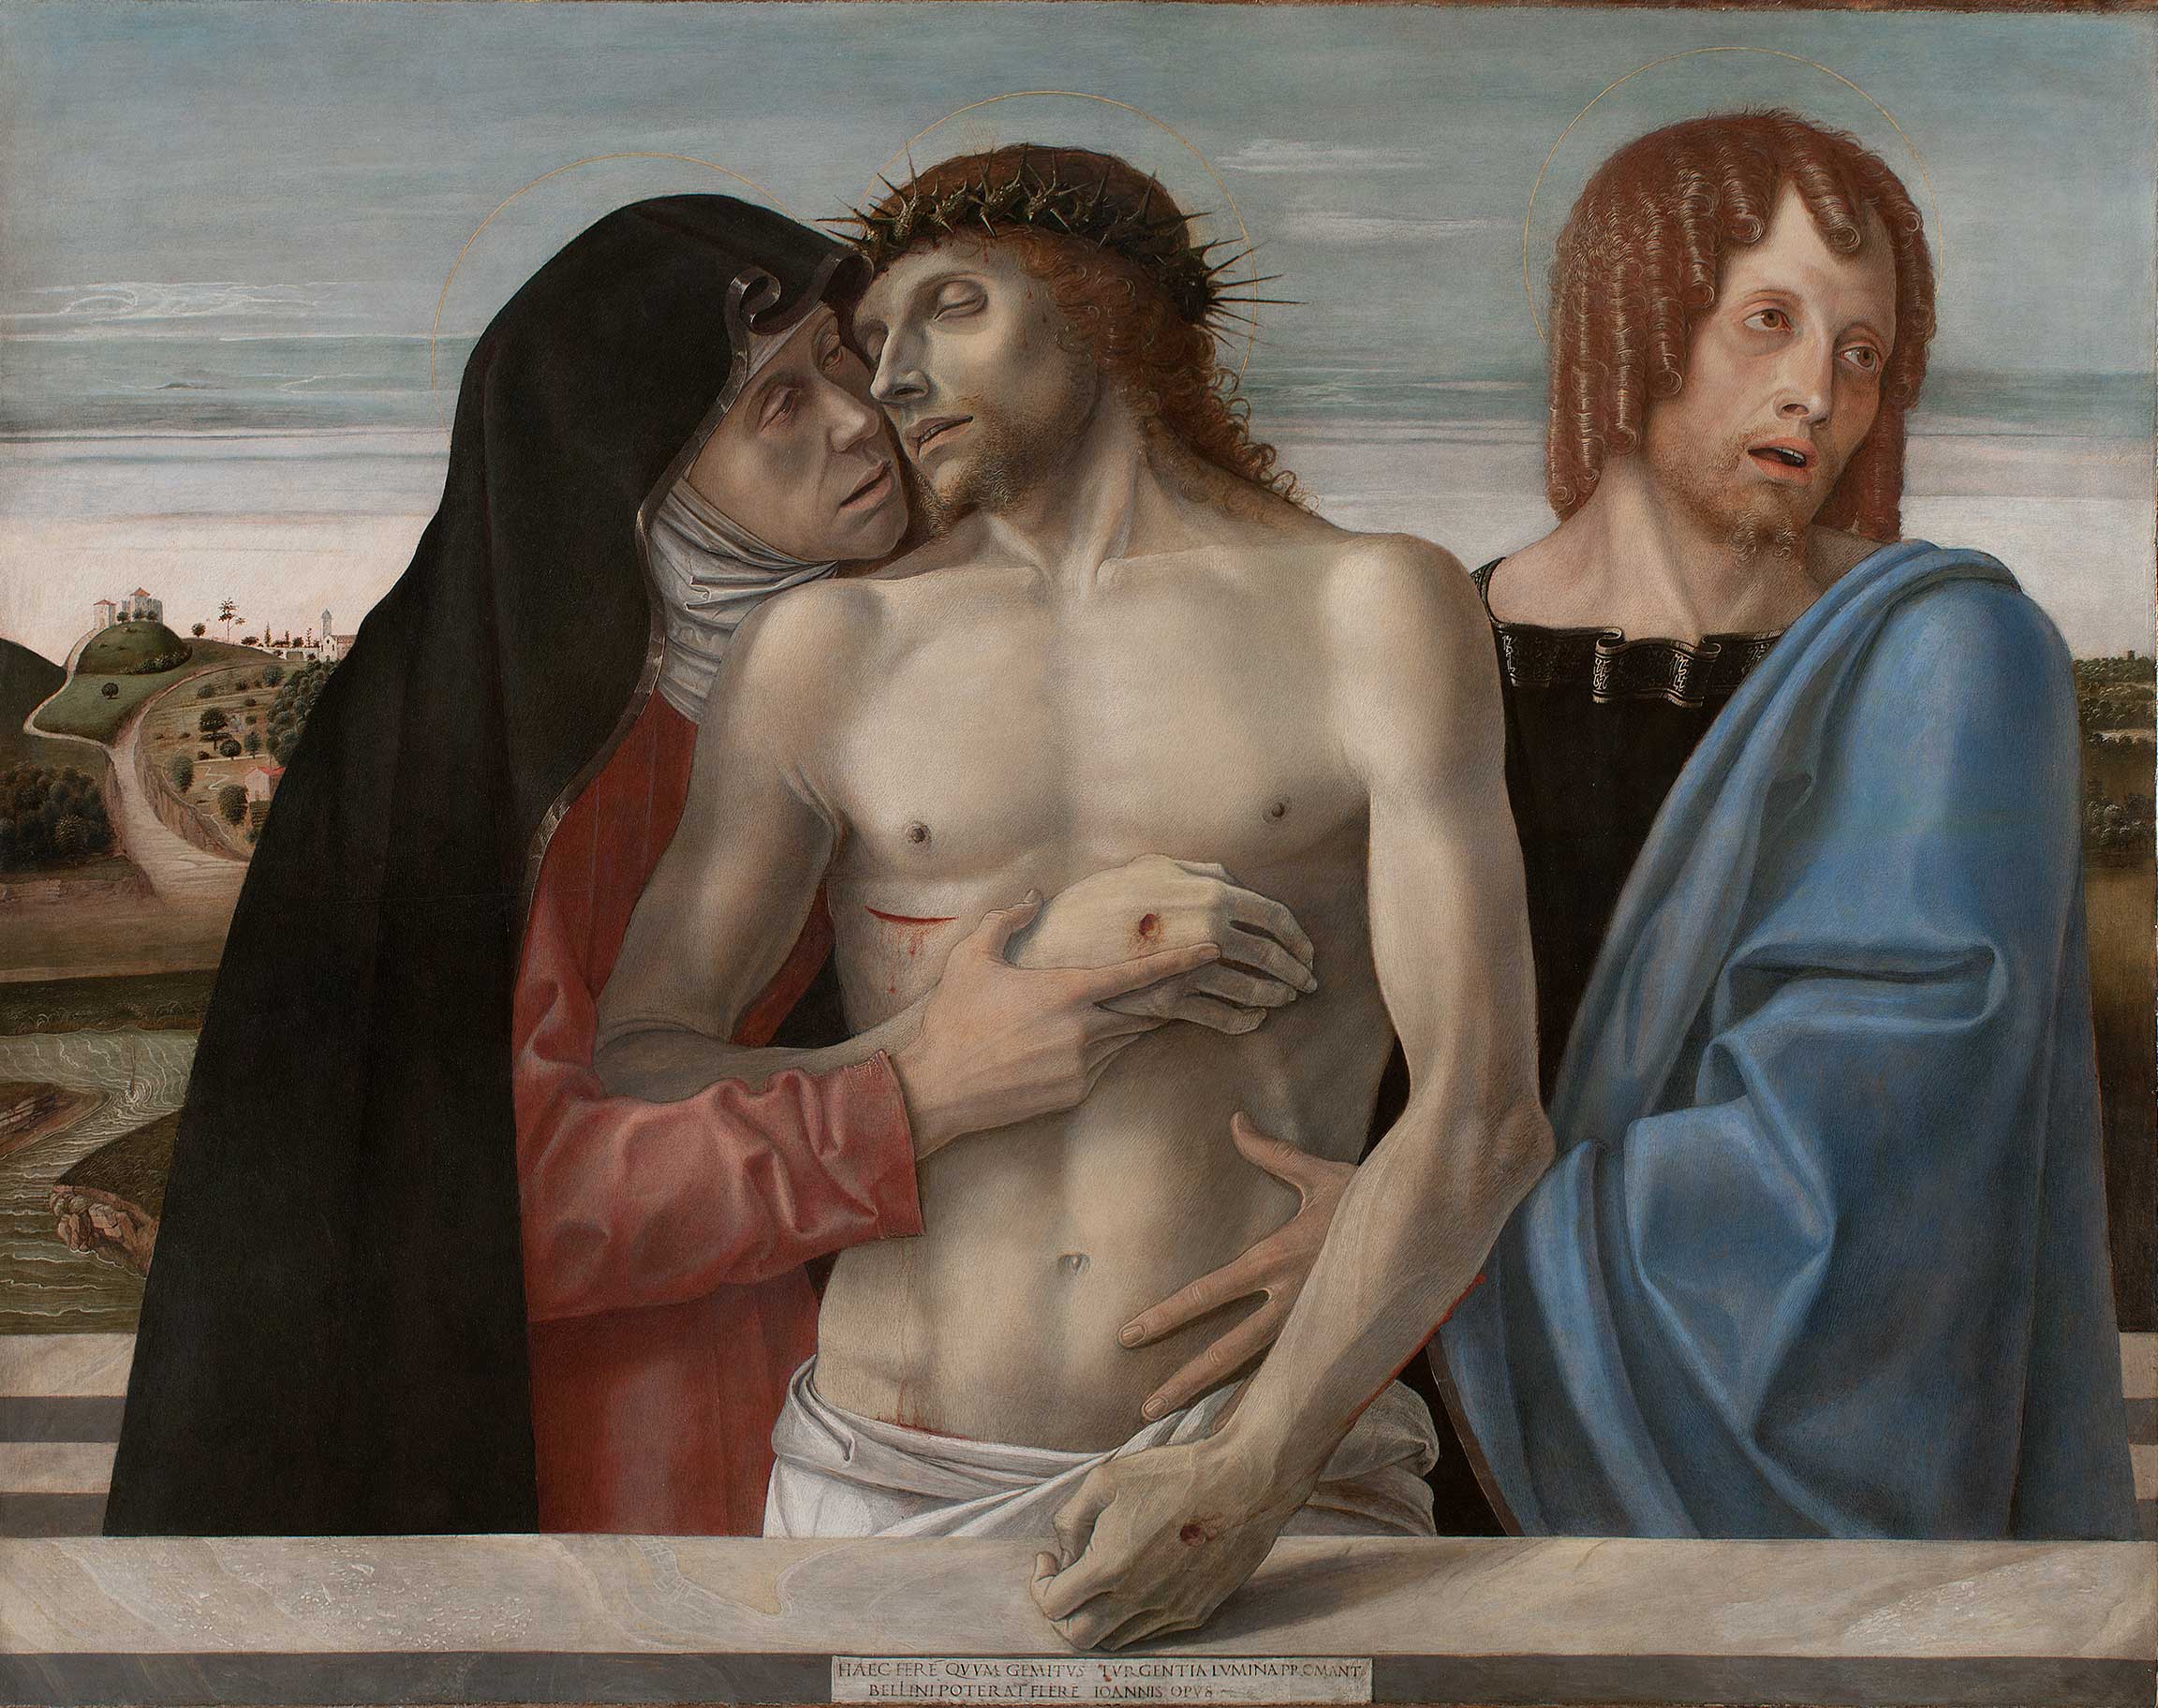 Pietà by Giovanni Bellini - 1460 ca. - 86 × 107 cm 